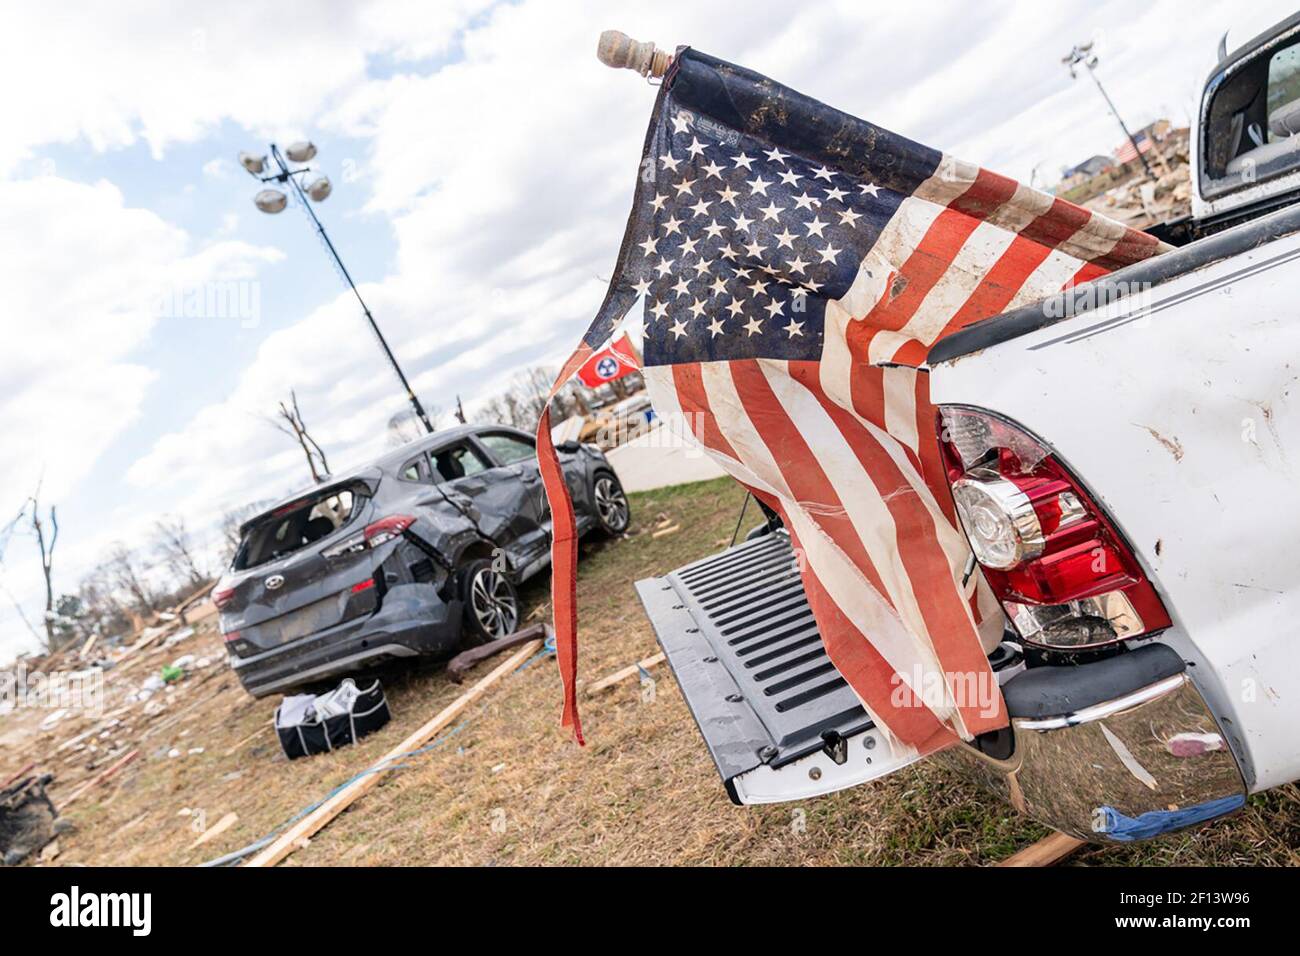 Un drapeau américain endommagé par la tornade est soutenu à l'arrière d'un camion dans le quartier ravagé par la tornade de Cookeville Tennessee. Vendredi 6 2020 mars où une tornade a frappé tôt le mardi 3 mars tuant 18 des 24 personnes tuées dans le centre du Tennessee. Banque D'Images